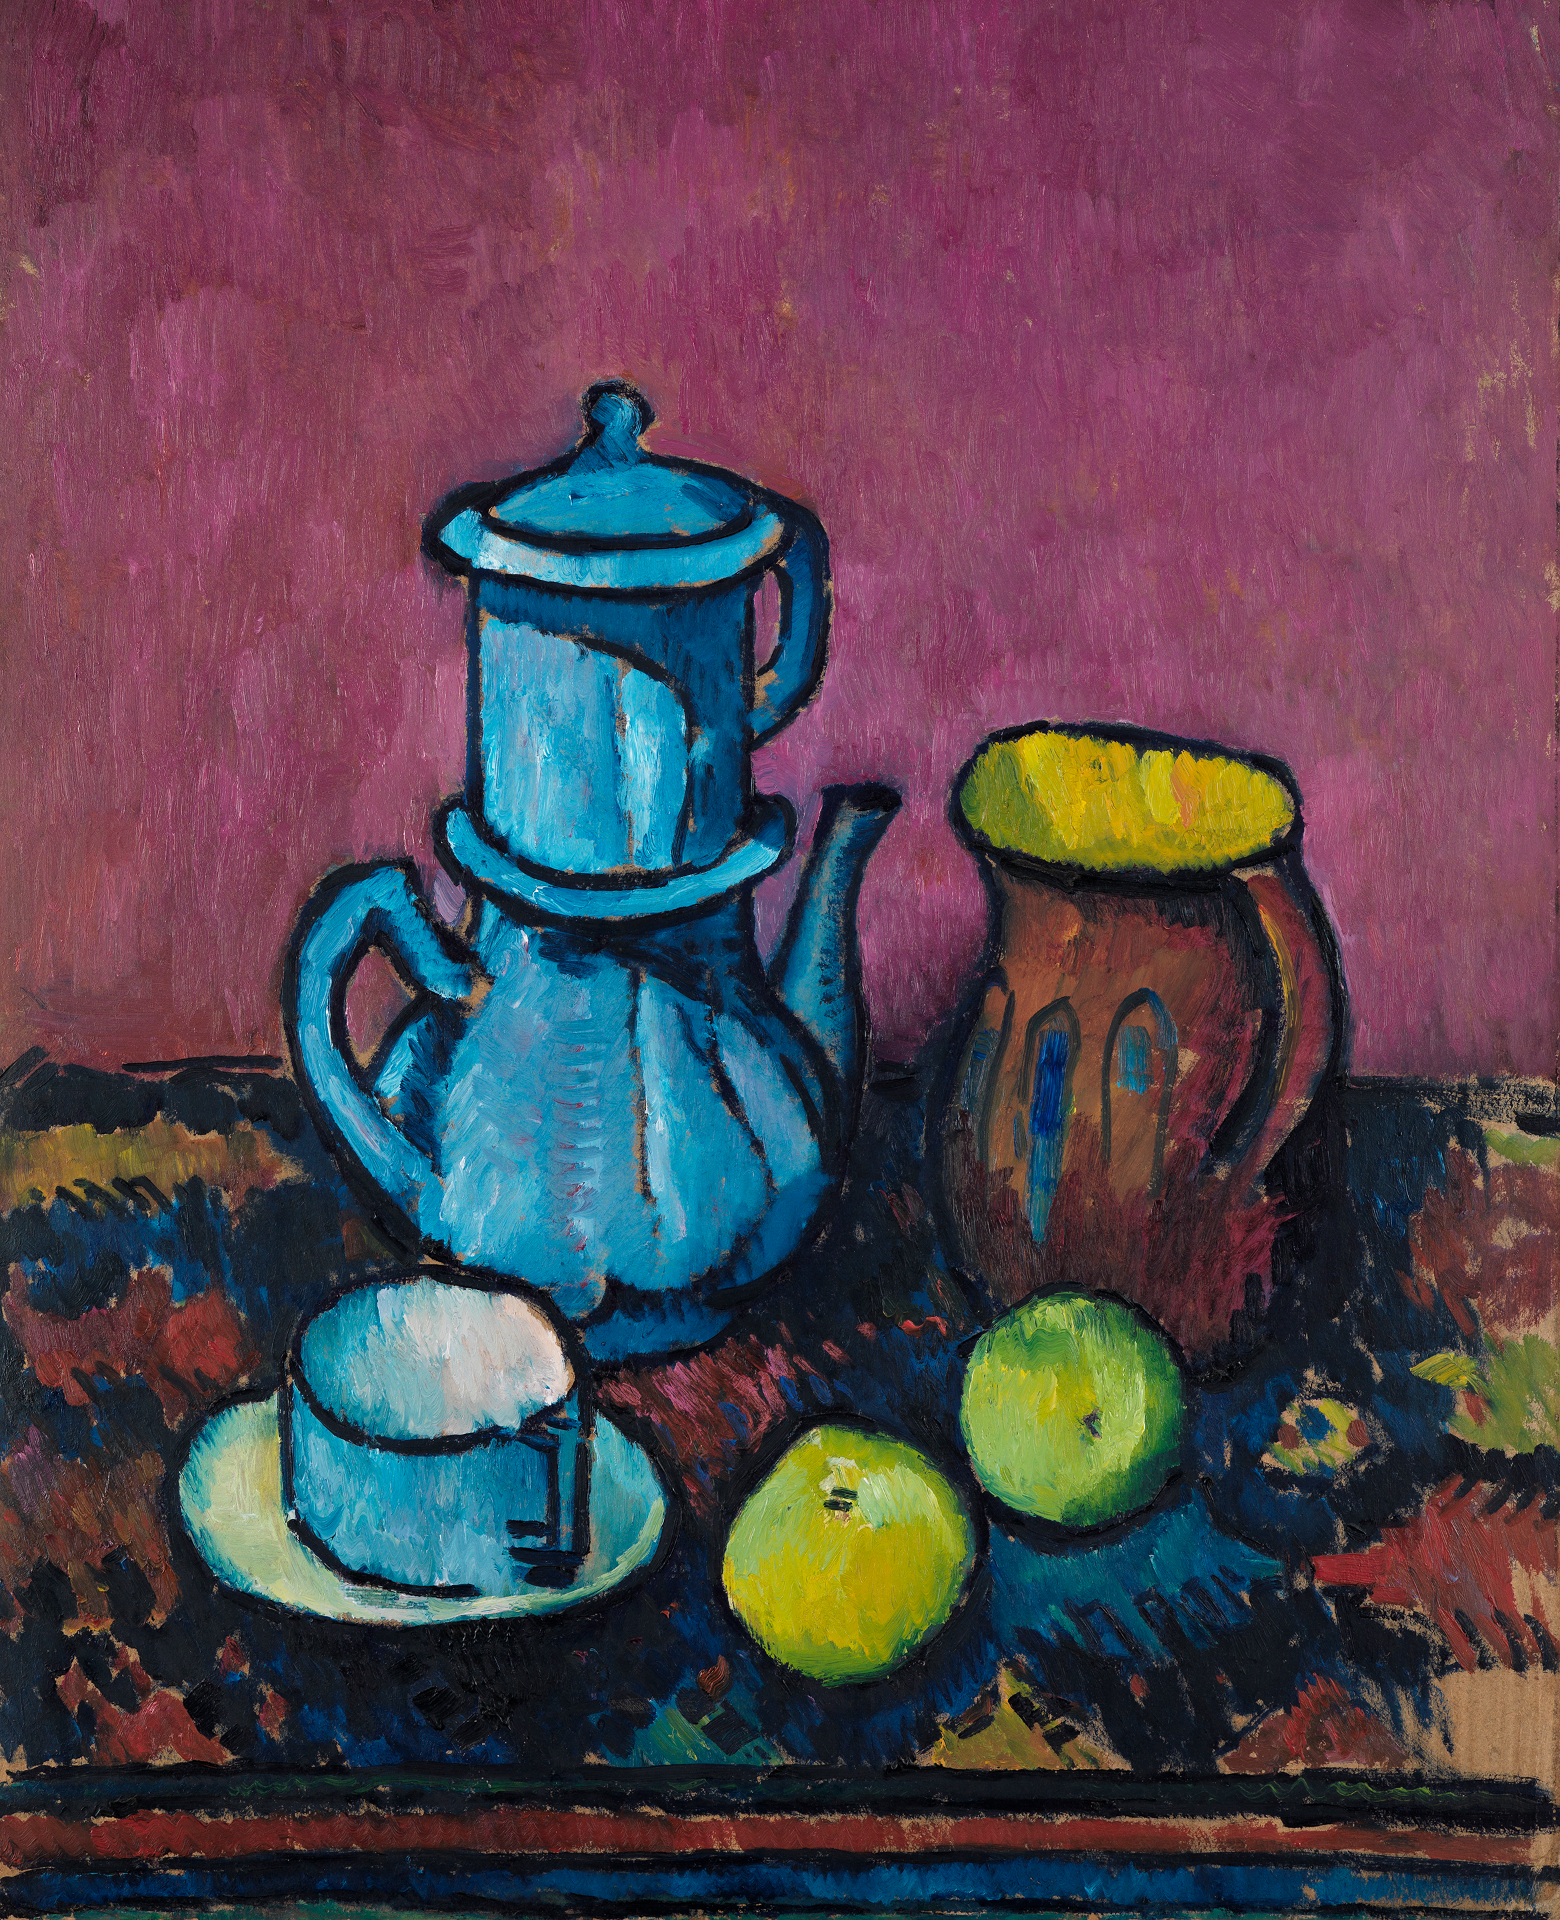 Stilleben mit Kaffeegeschirr und Äpfeln von Alexander Kanoldt. Das Gemälde ist abstrakt gestaltet. Die Kanne und die Tasse sind blau. Der Hintergrund ist magenta.